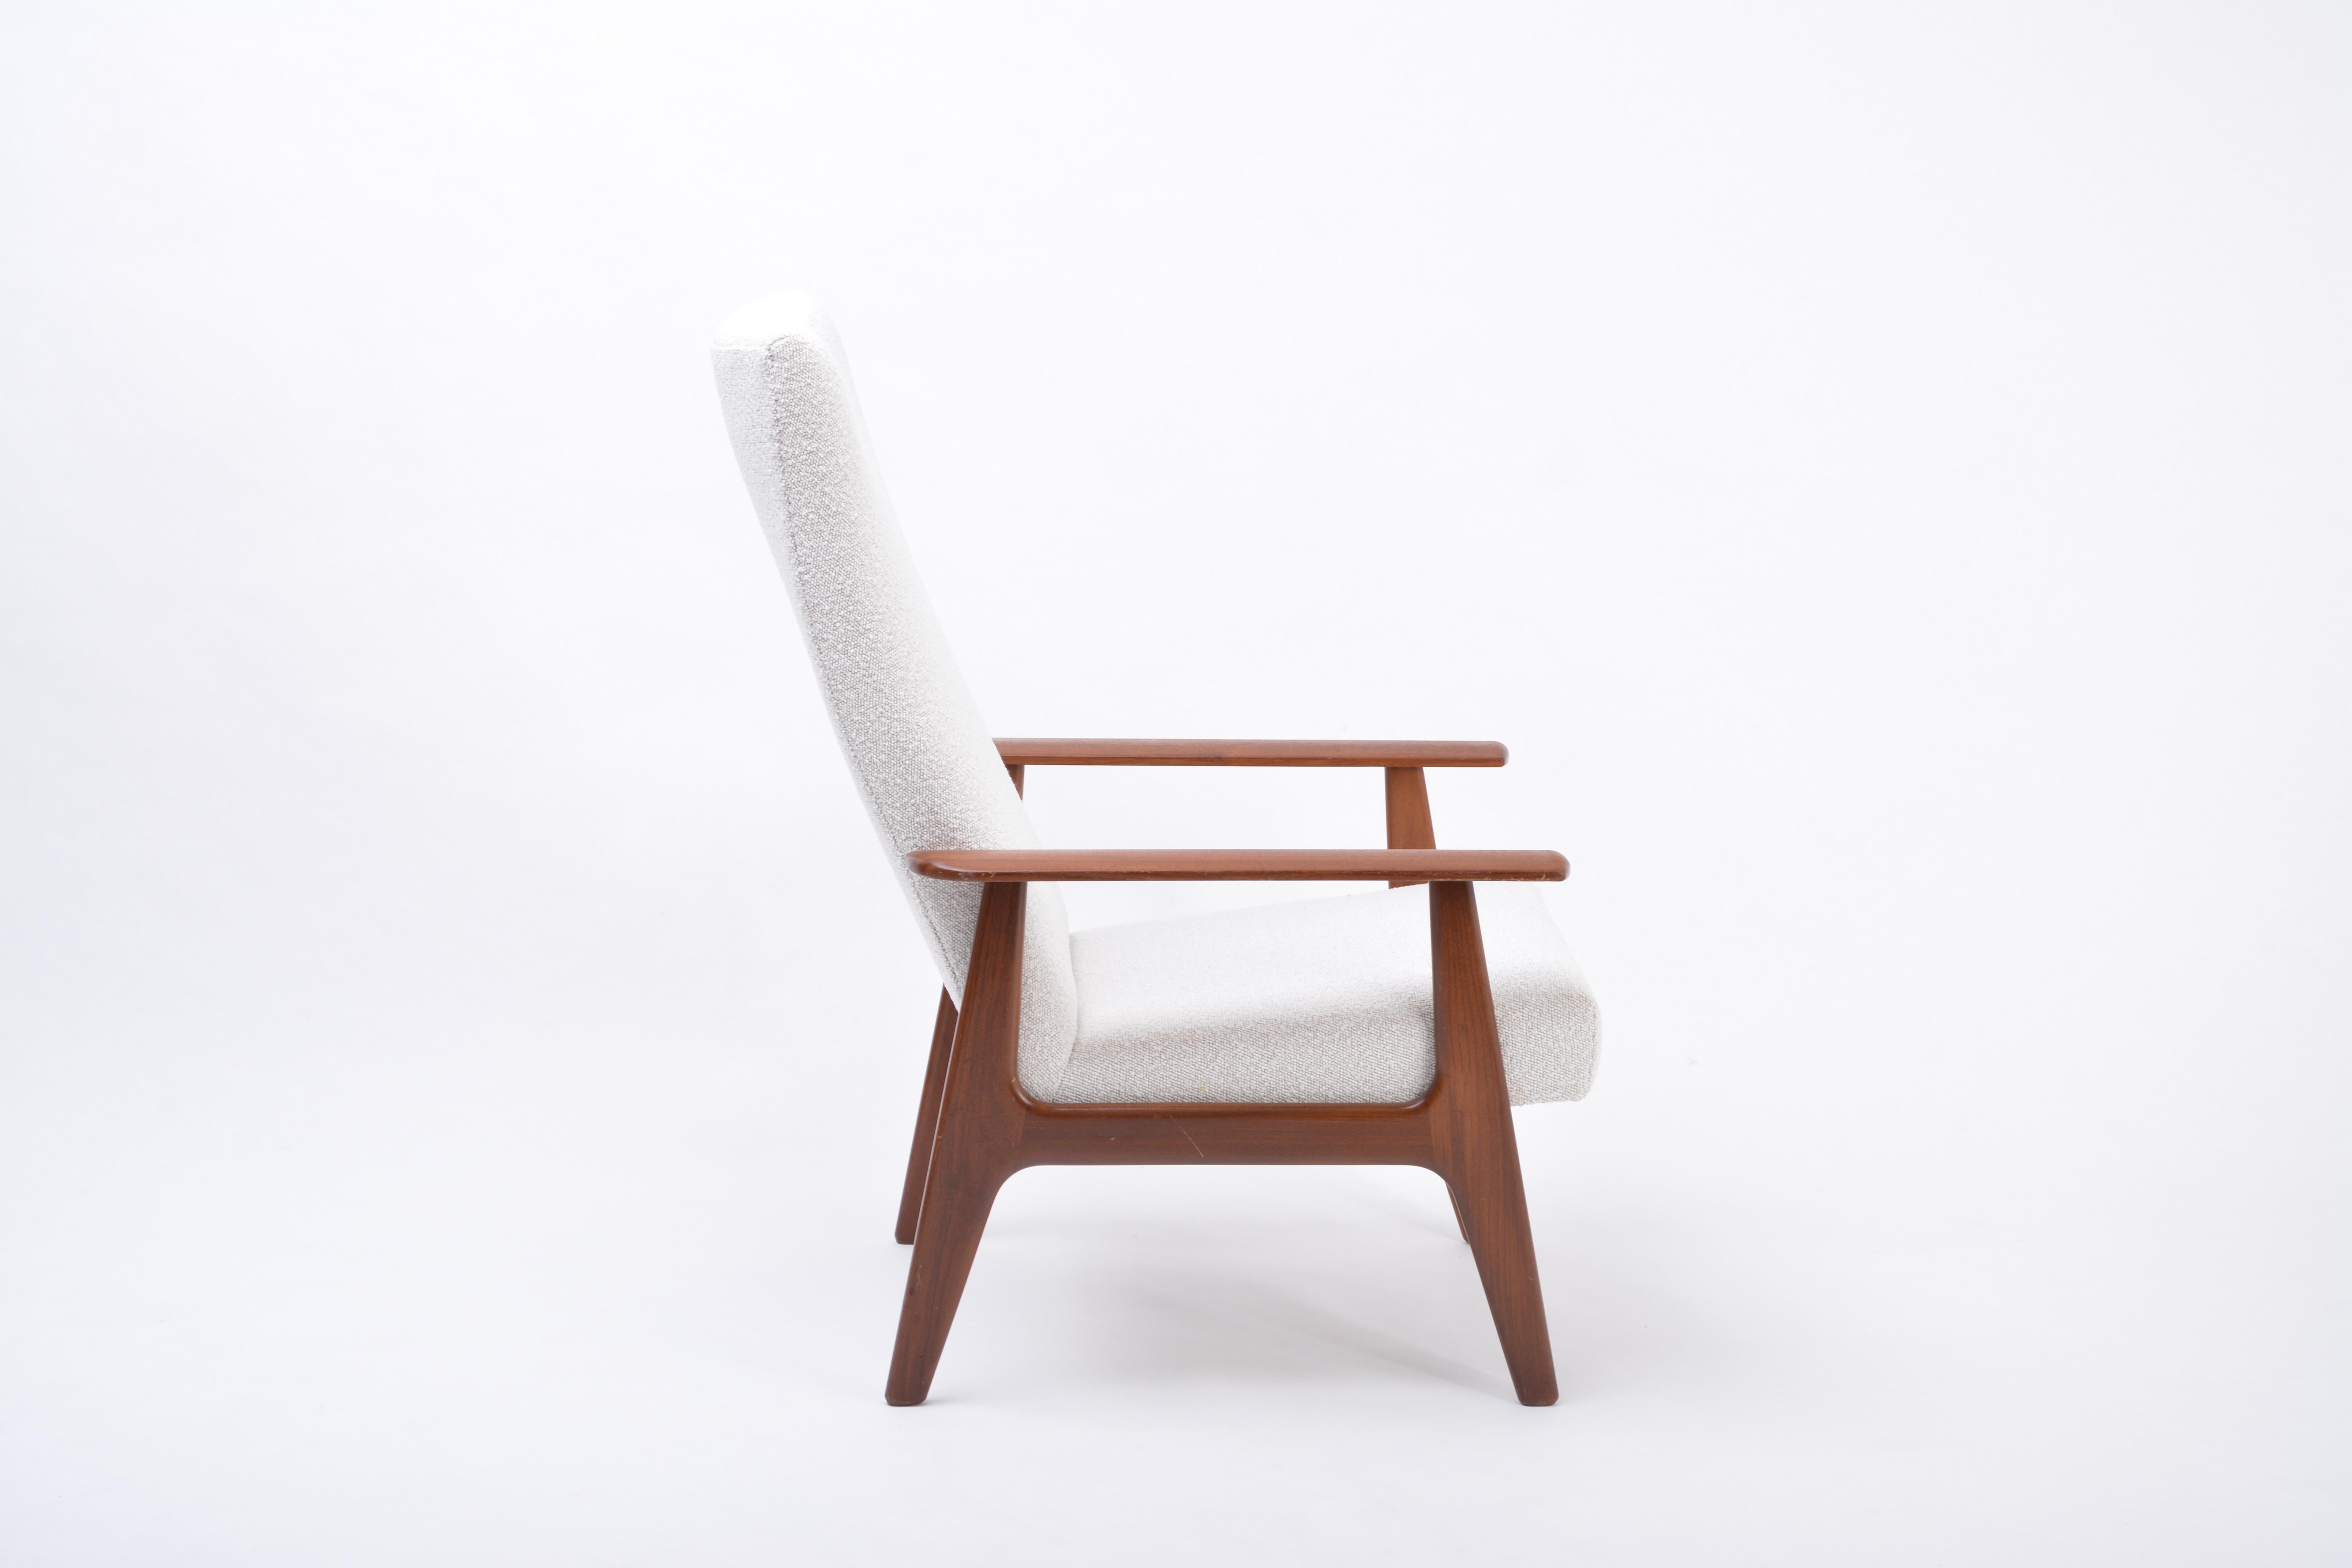 Holländischer Mid-Century Modern Teak Lounge Chair von Topform, neu gepolstert mit Bouclé
Dieser Loungesessel wurde in den 1970er Jahren von Topform in den Niederlanden hergestellt. Die Struktur ist aus Teakholz gefertigt. Der Stuhl wurde komplett